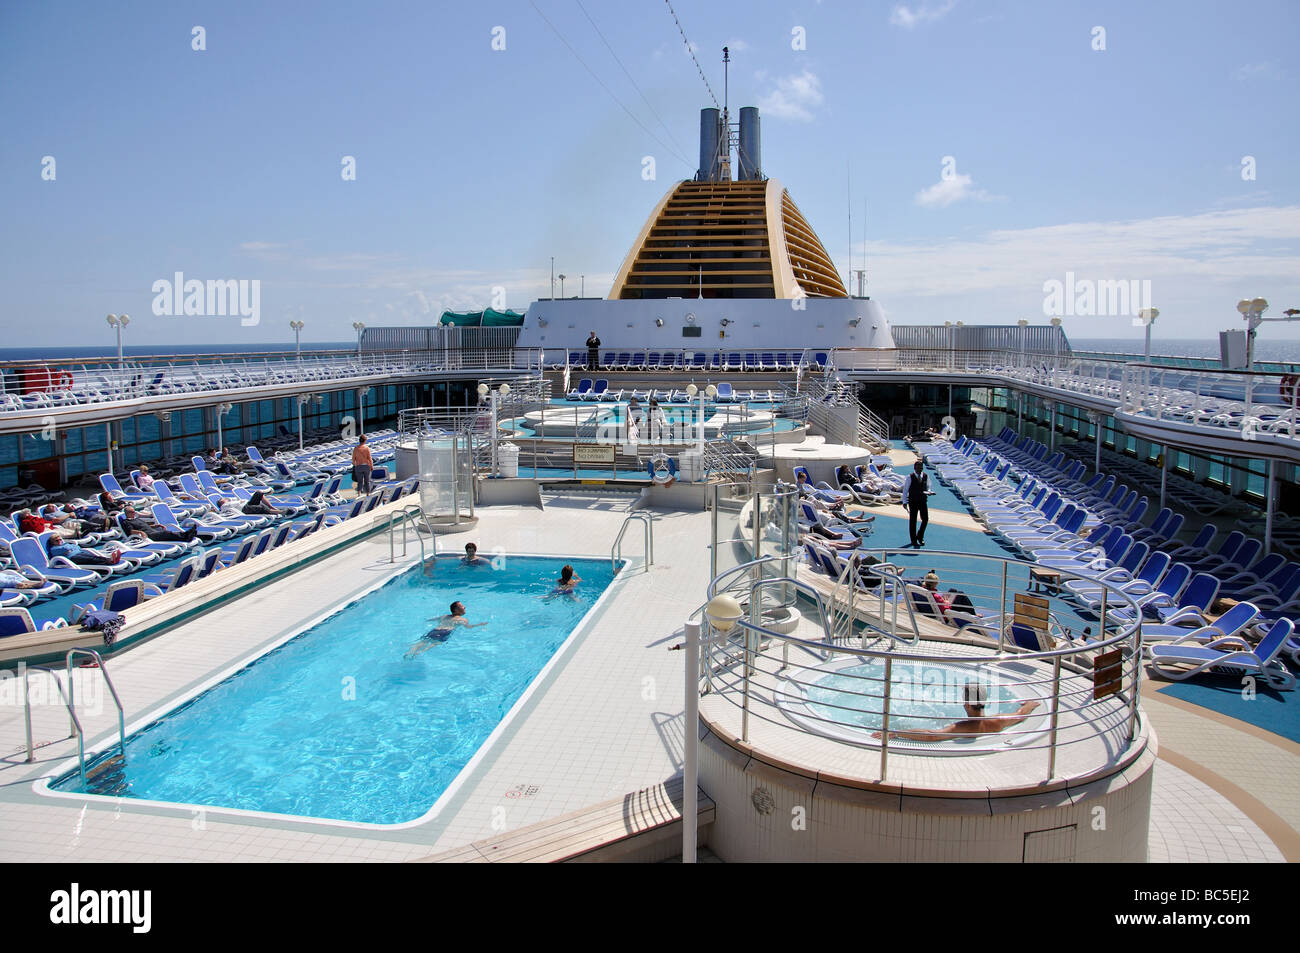 La plate-forme de soleil, P&O Oceana Cruise Ship, Mer du Nord, de l'Europe Banque D'Images